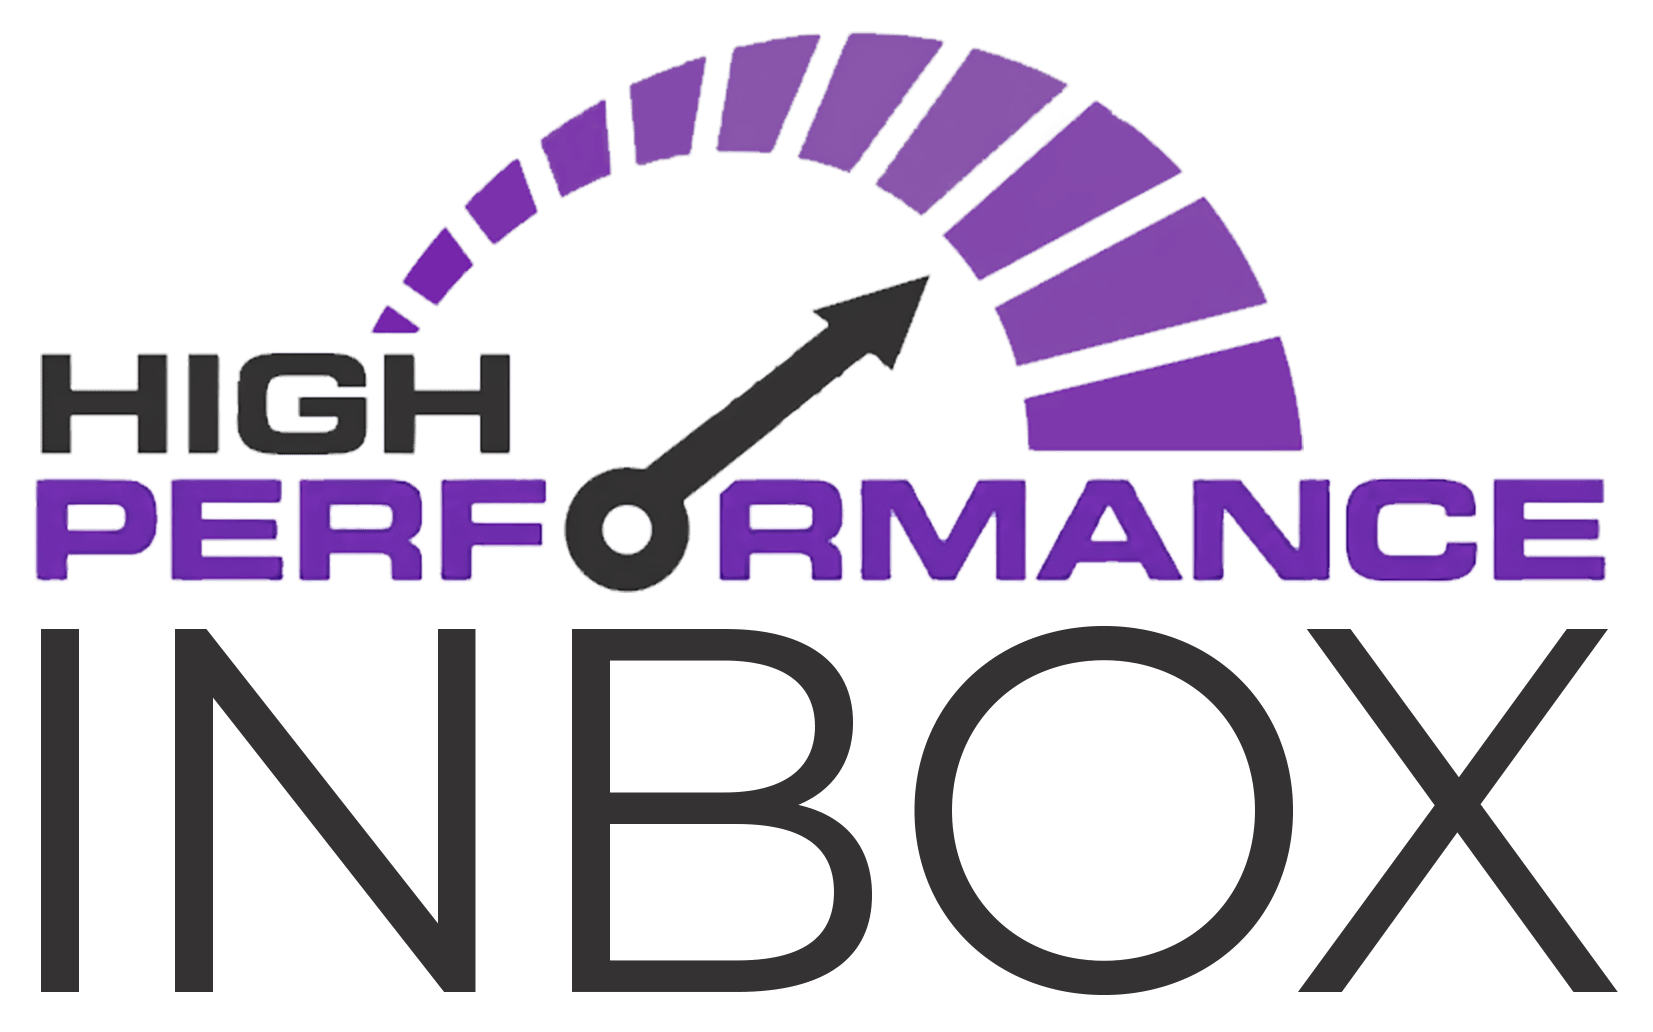 High Performance Inbox By Rich Schefren - Free Download Course